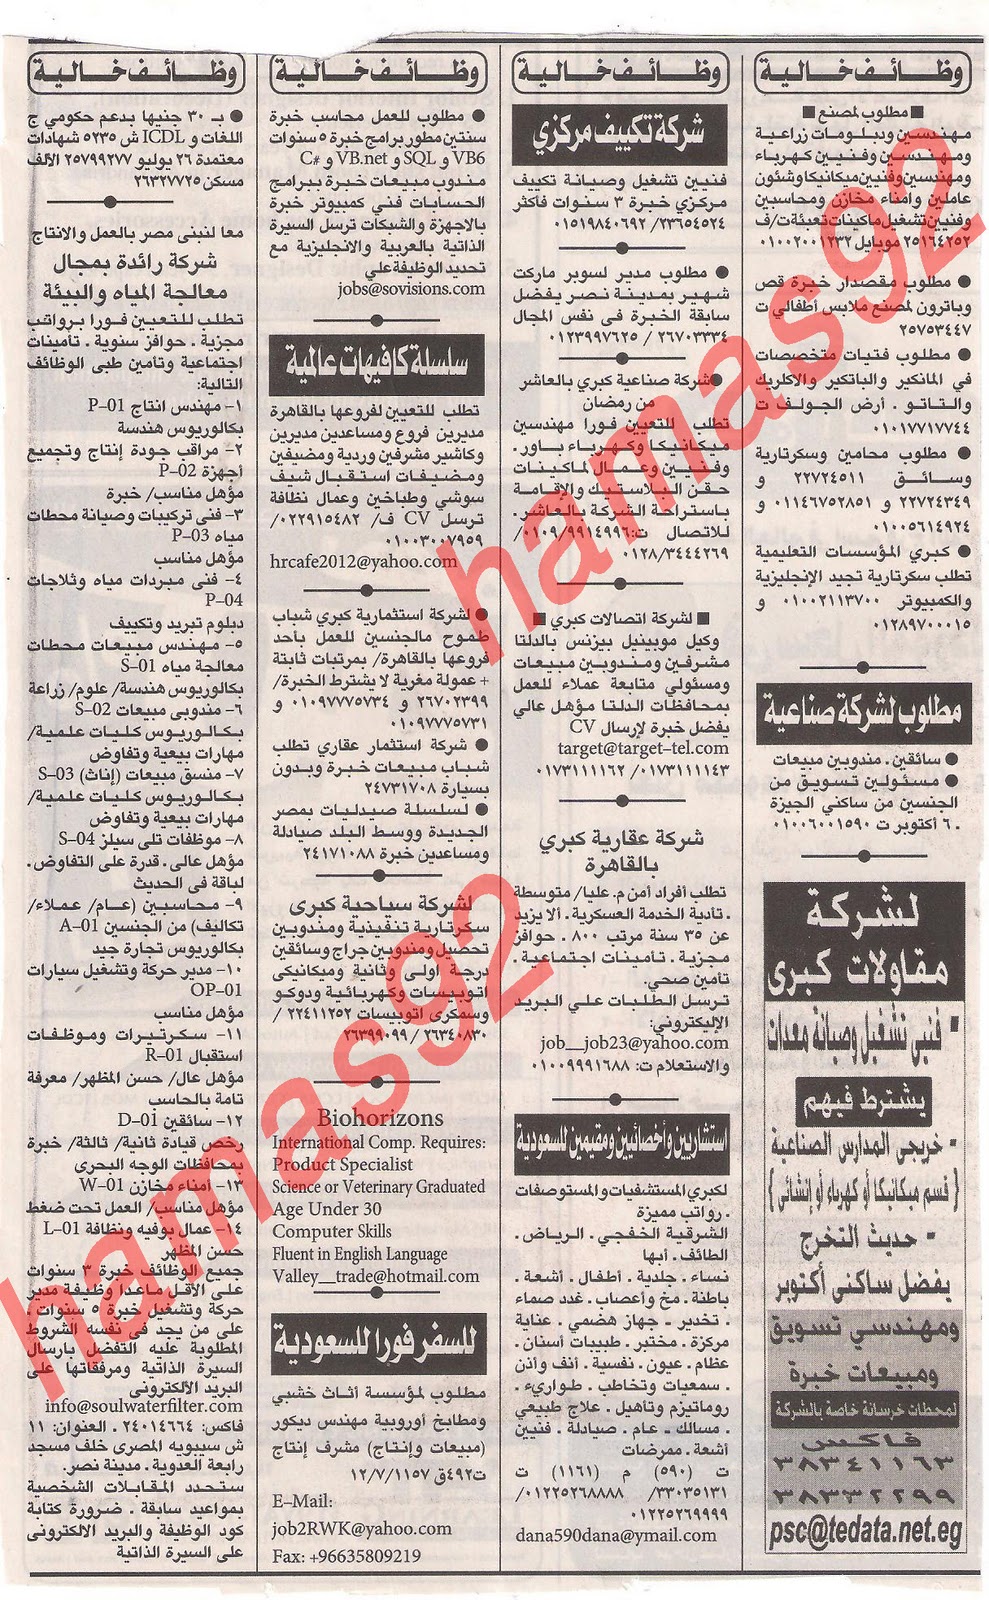 وظائف جريدة الاهرام الجمعة 9  ديسمبر 2011 , الجزء الاول , وظائف اهرام الجمعة 9\12\2011 Picture+005